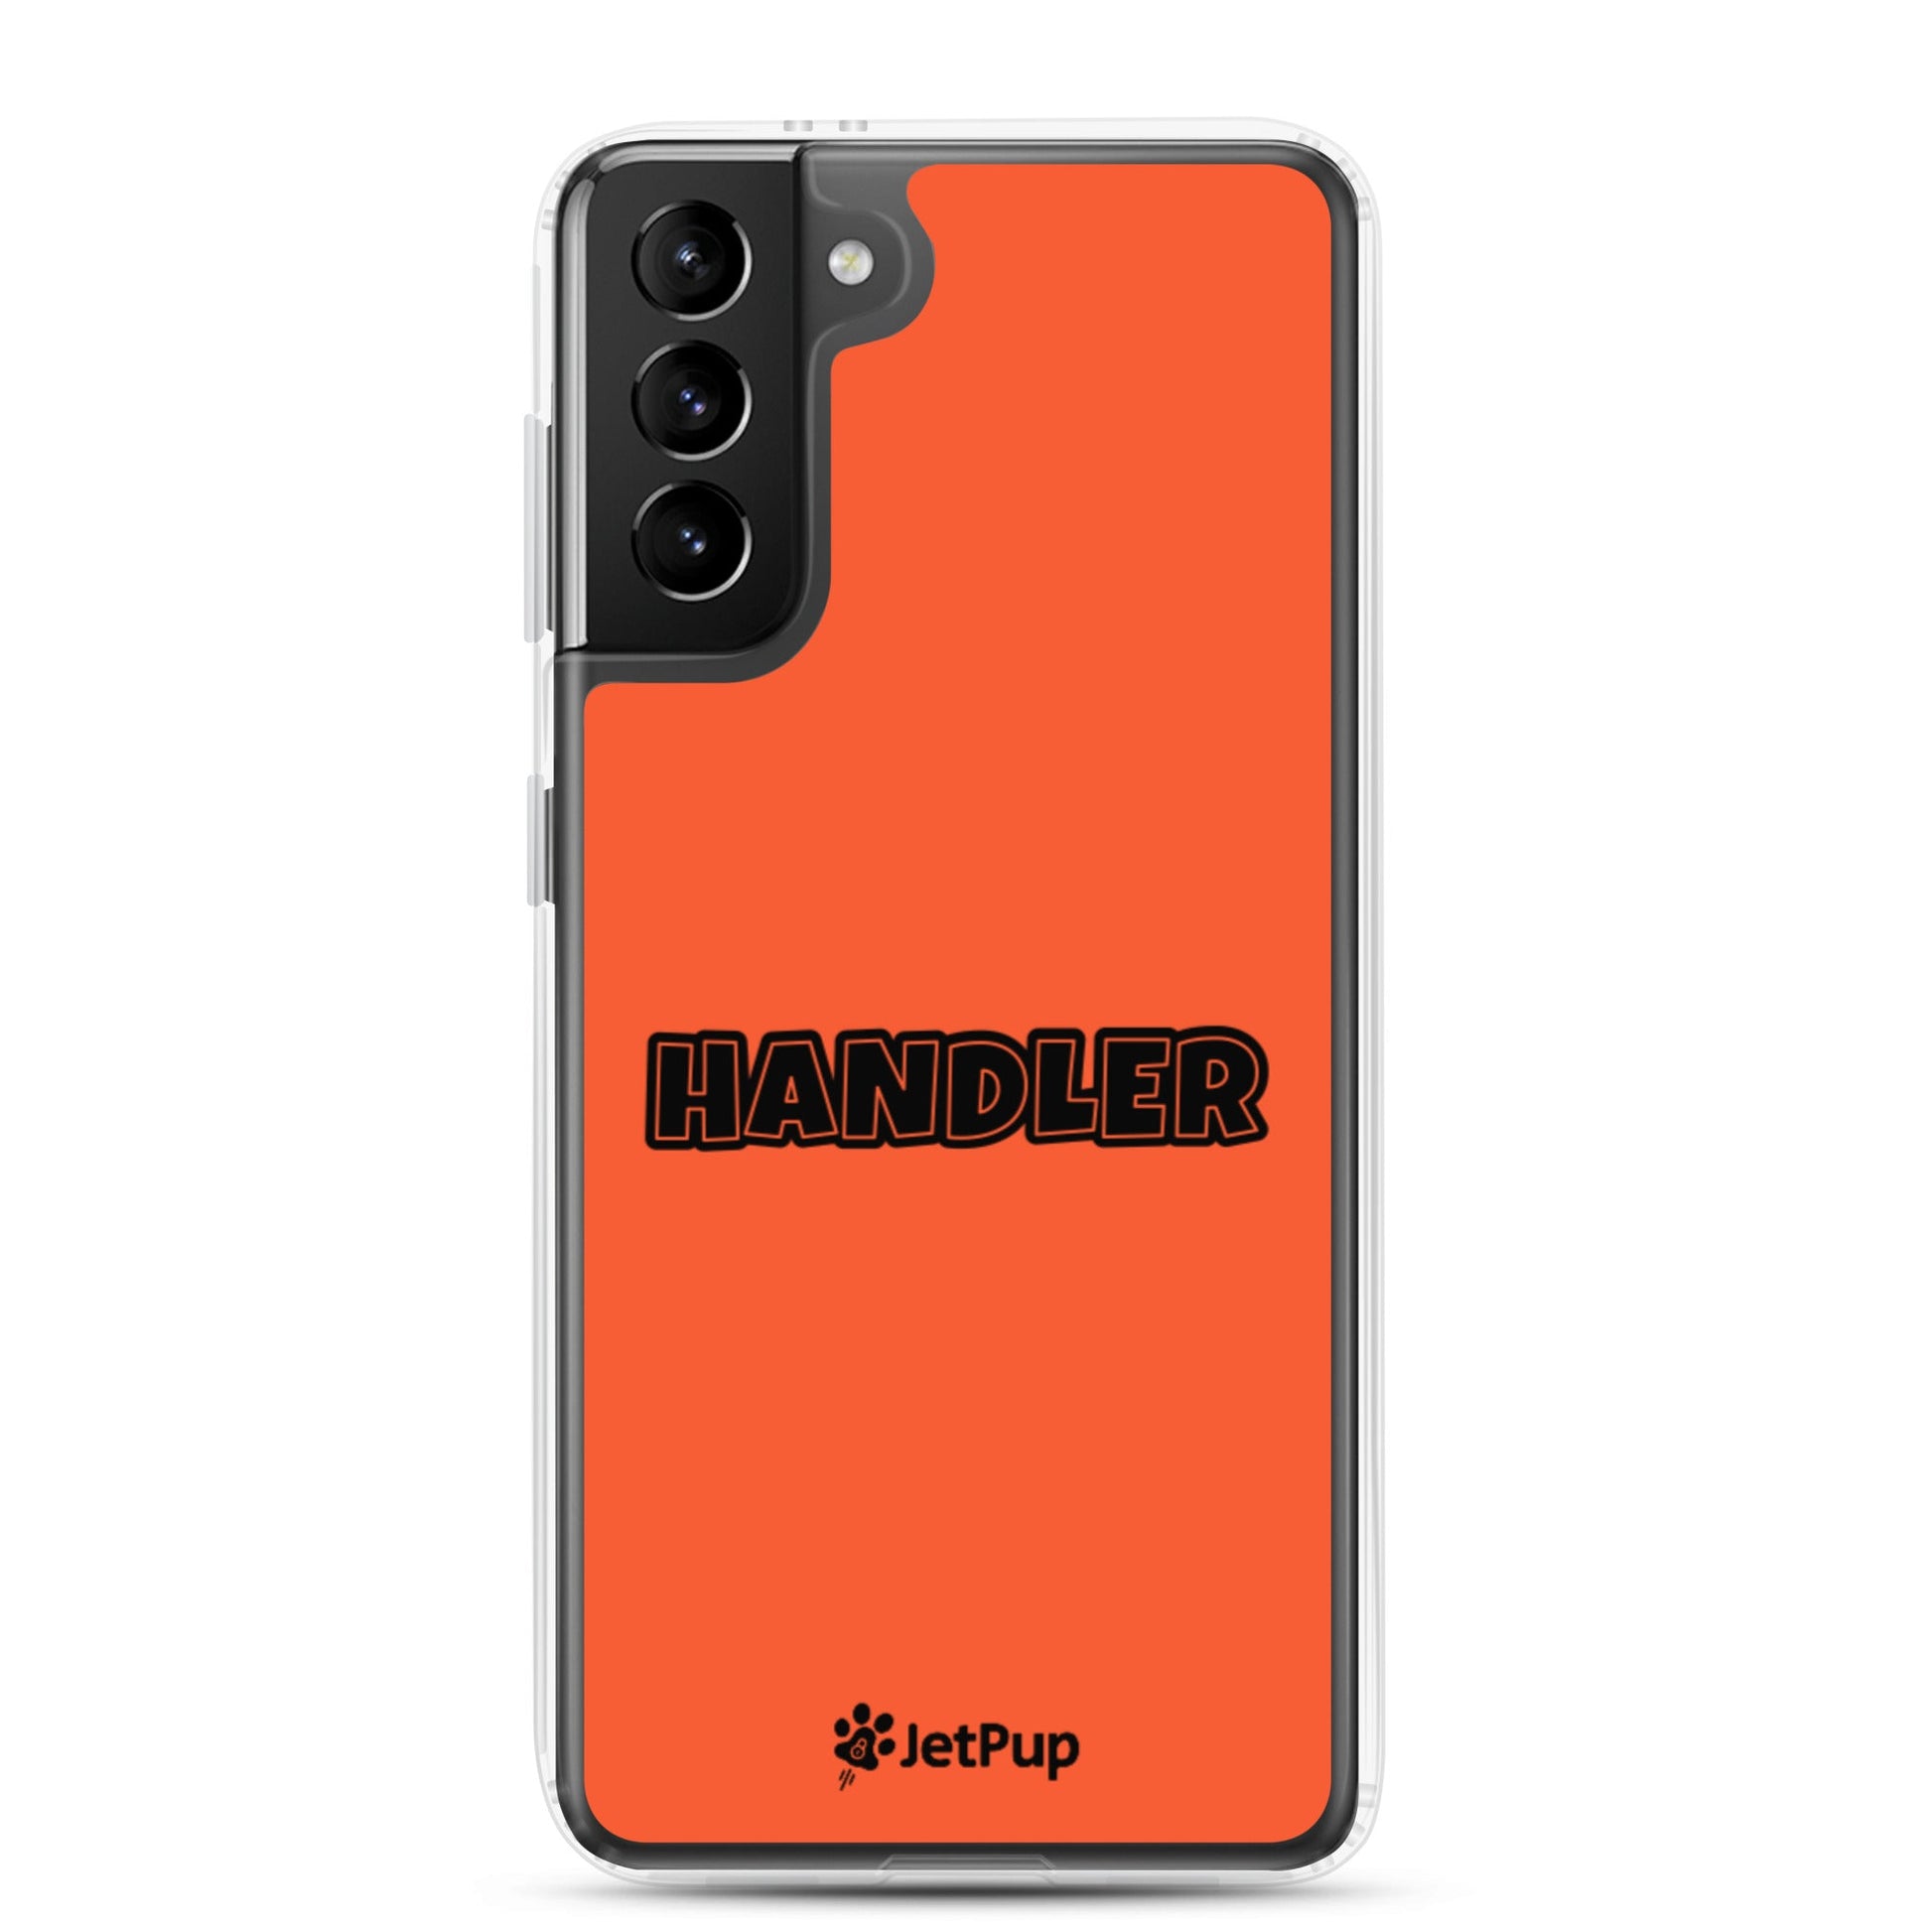 Handler Samsung Case - Orange - JetPup